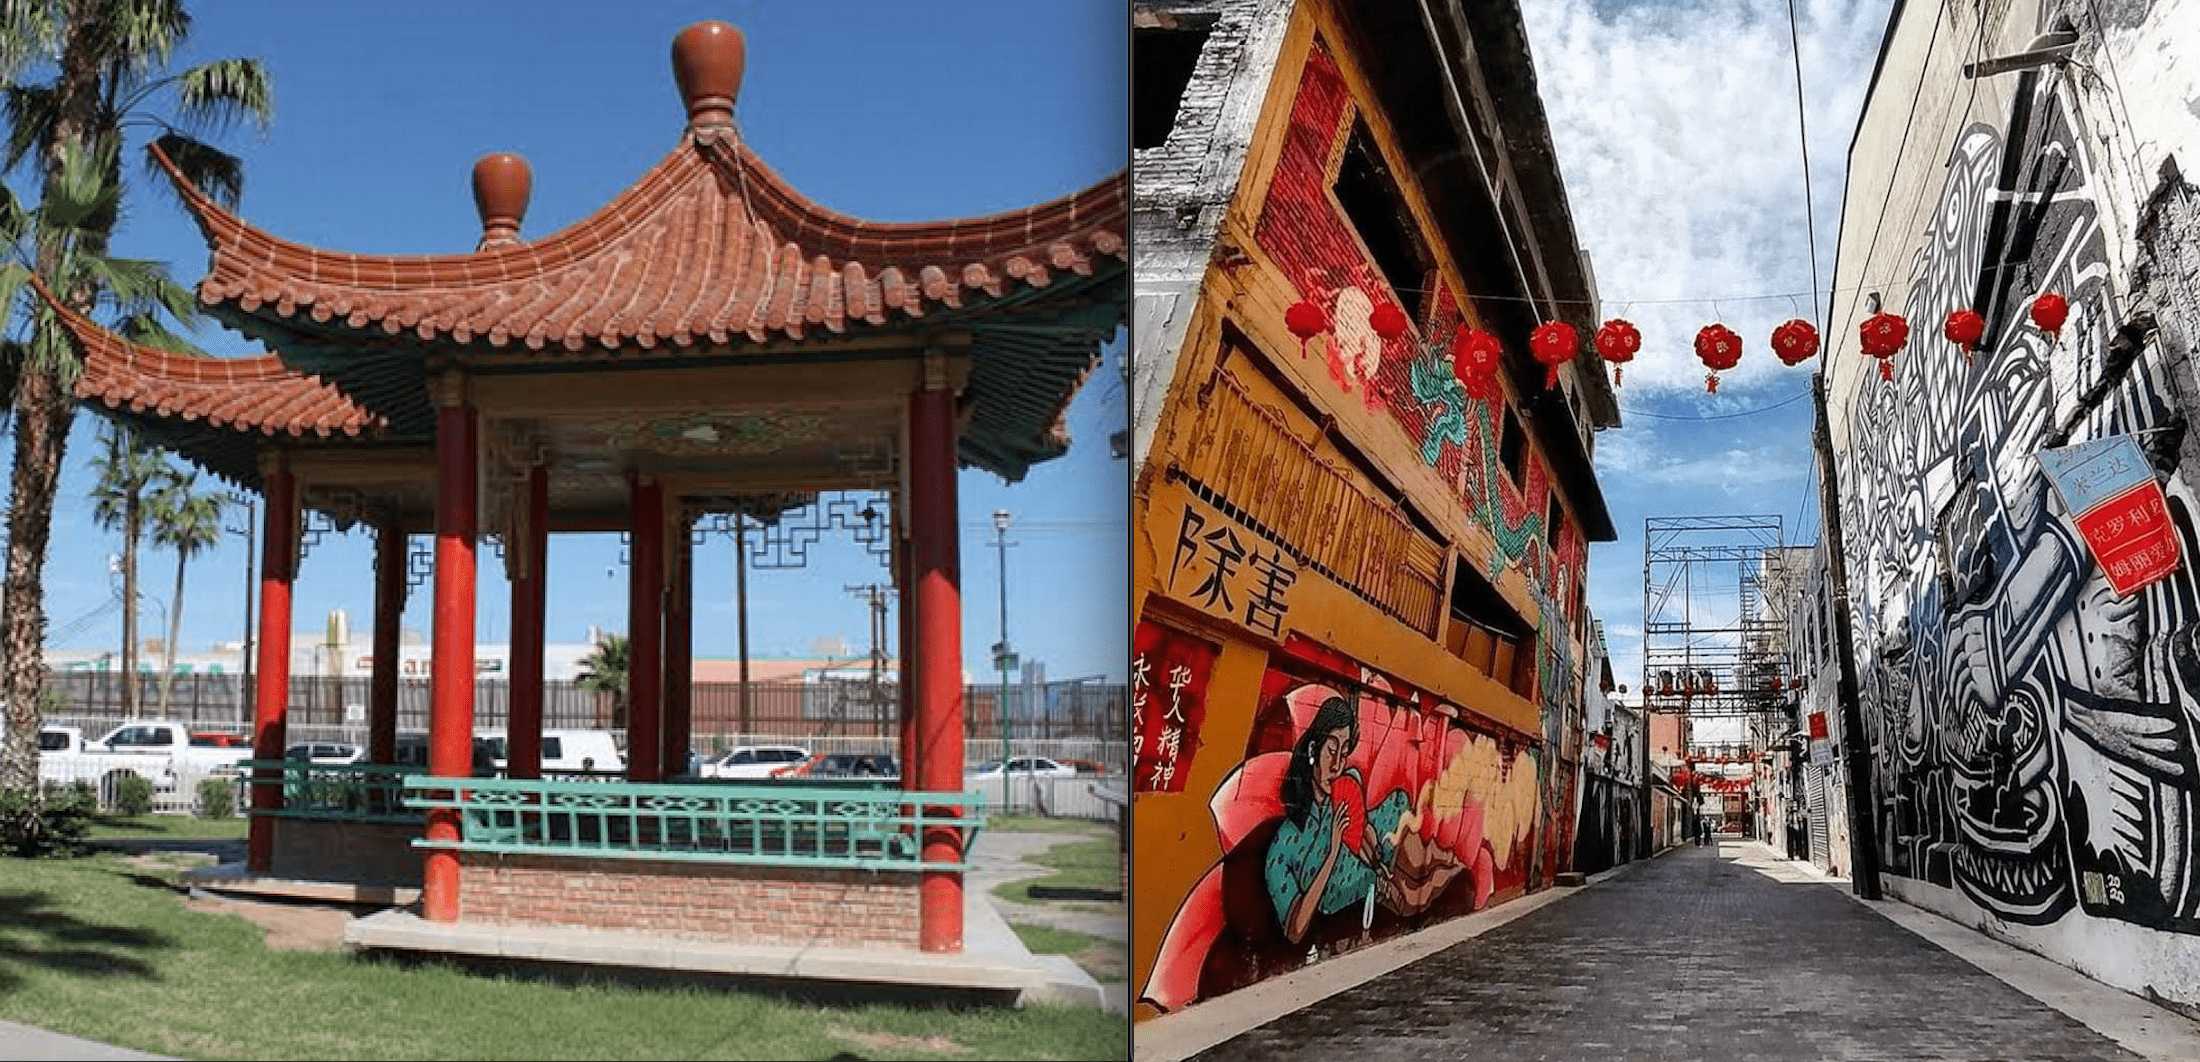 La Chinesca, uno de los lugares del norte con mayor mezcla cultural del